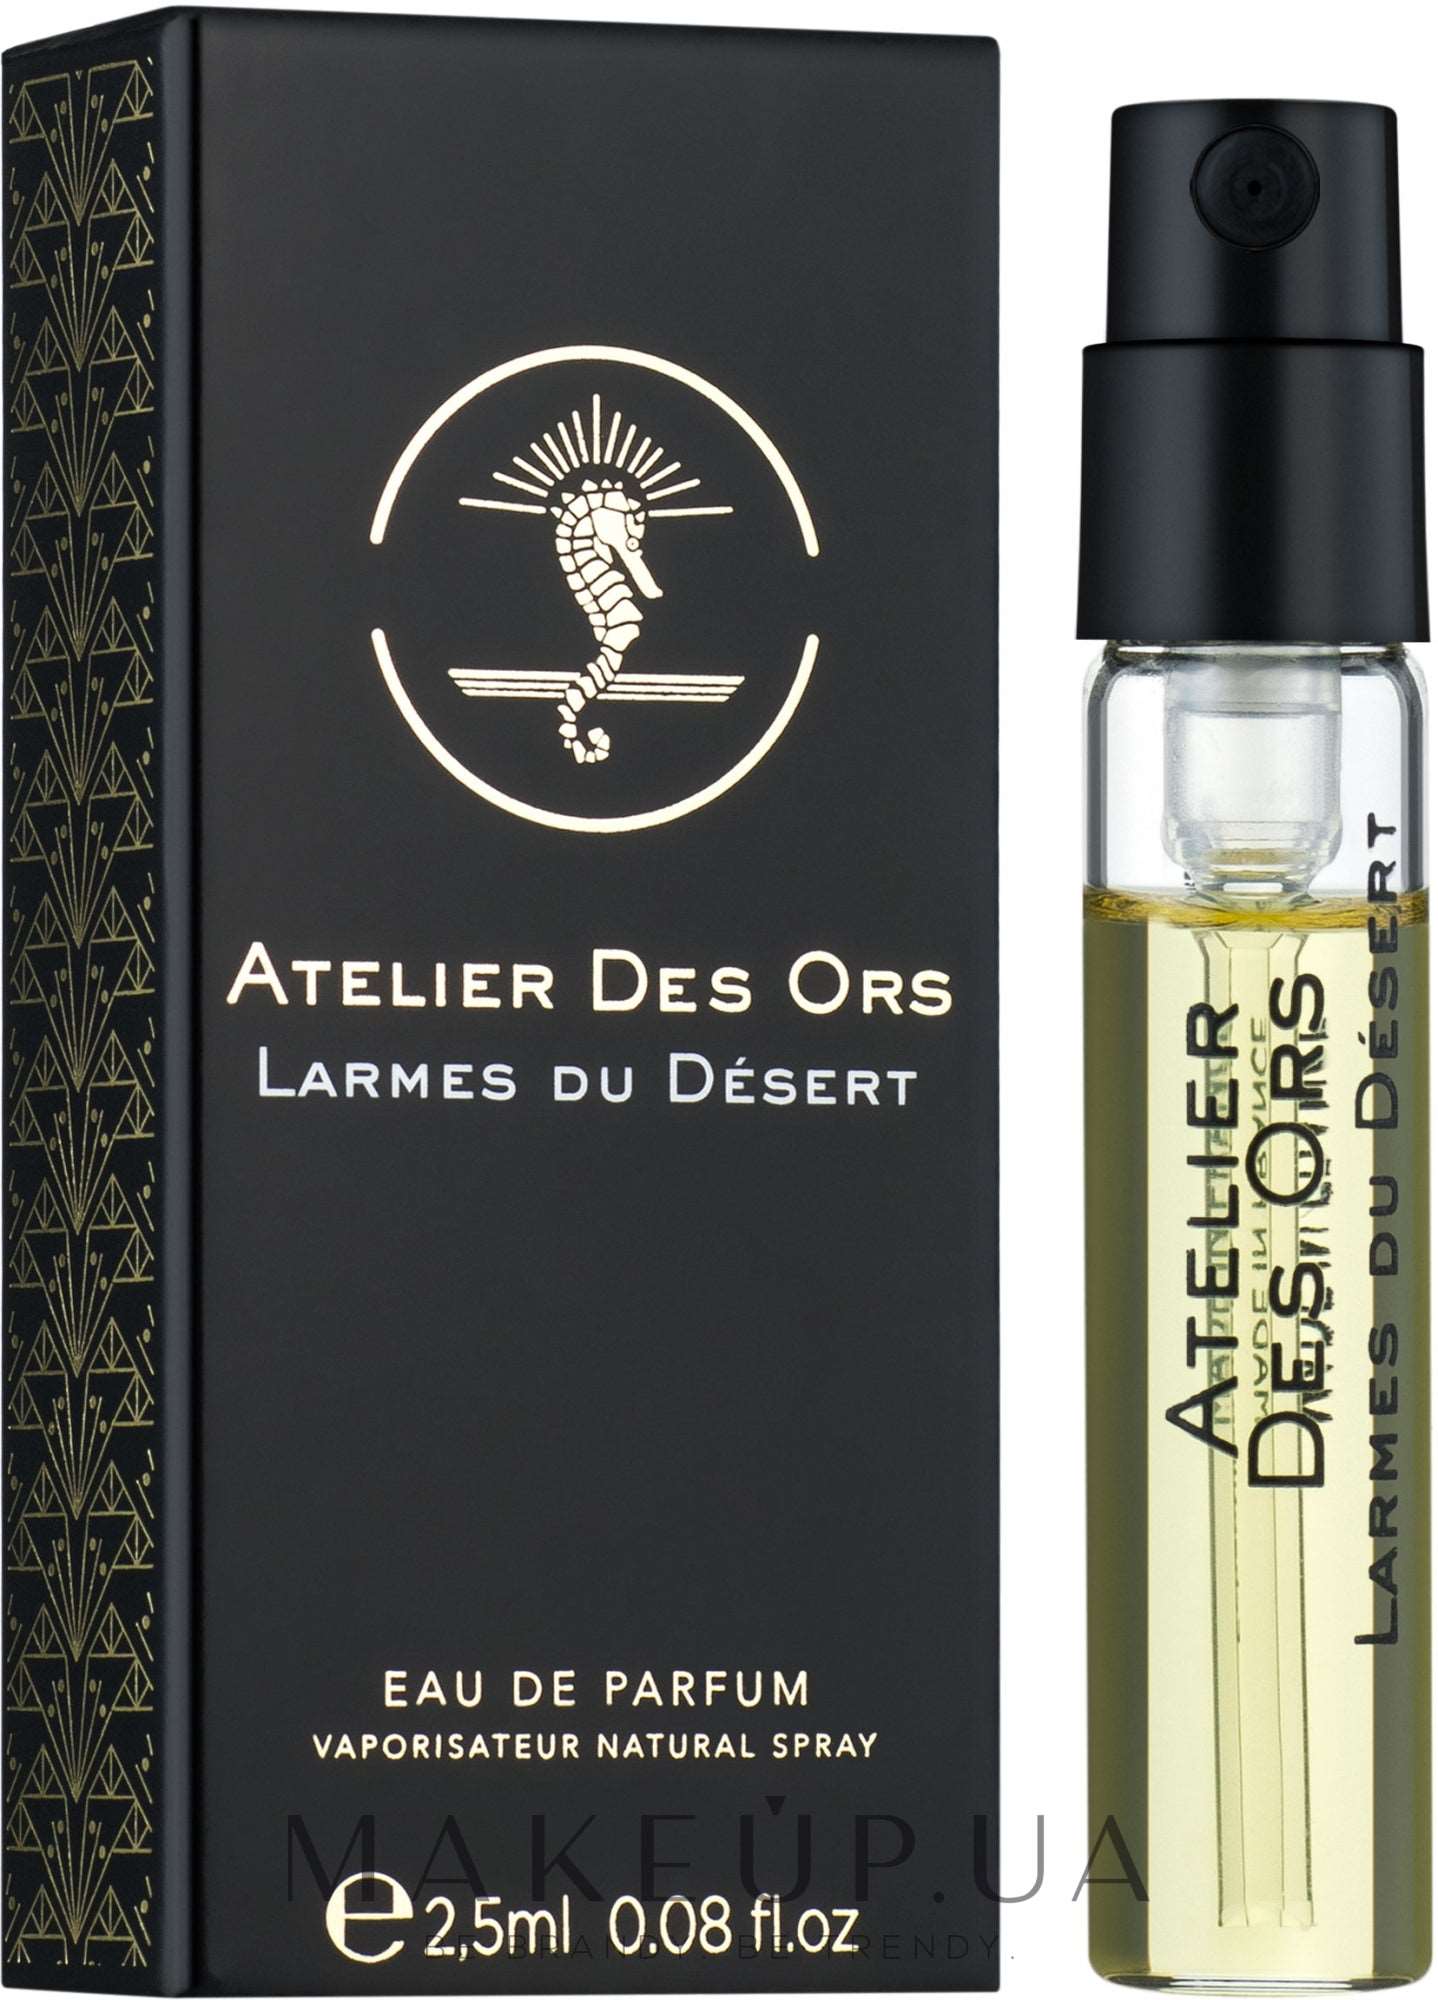 Atelier Des Ors Larmes du Desert 2.5 毫升 0.08 液体。 盎司。 官方香水样品